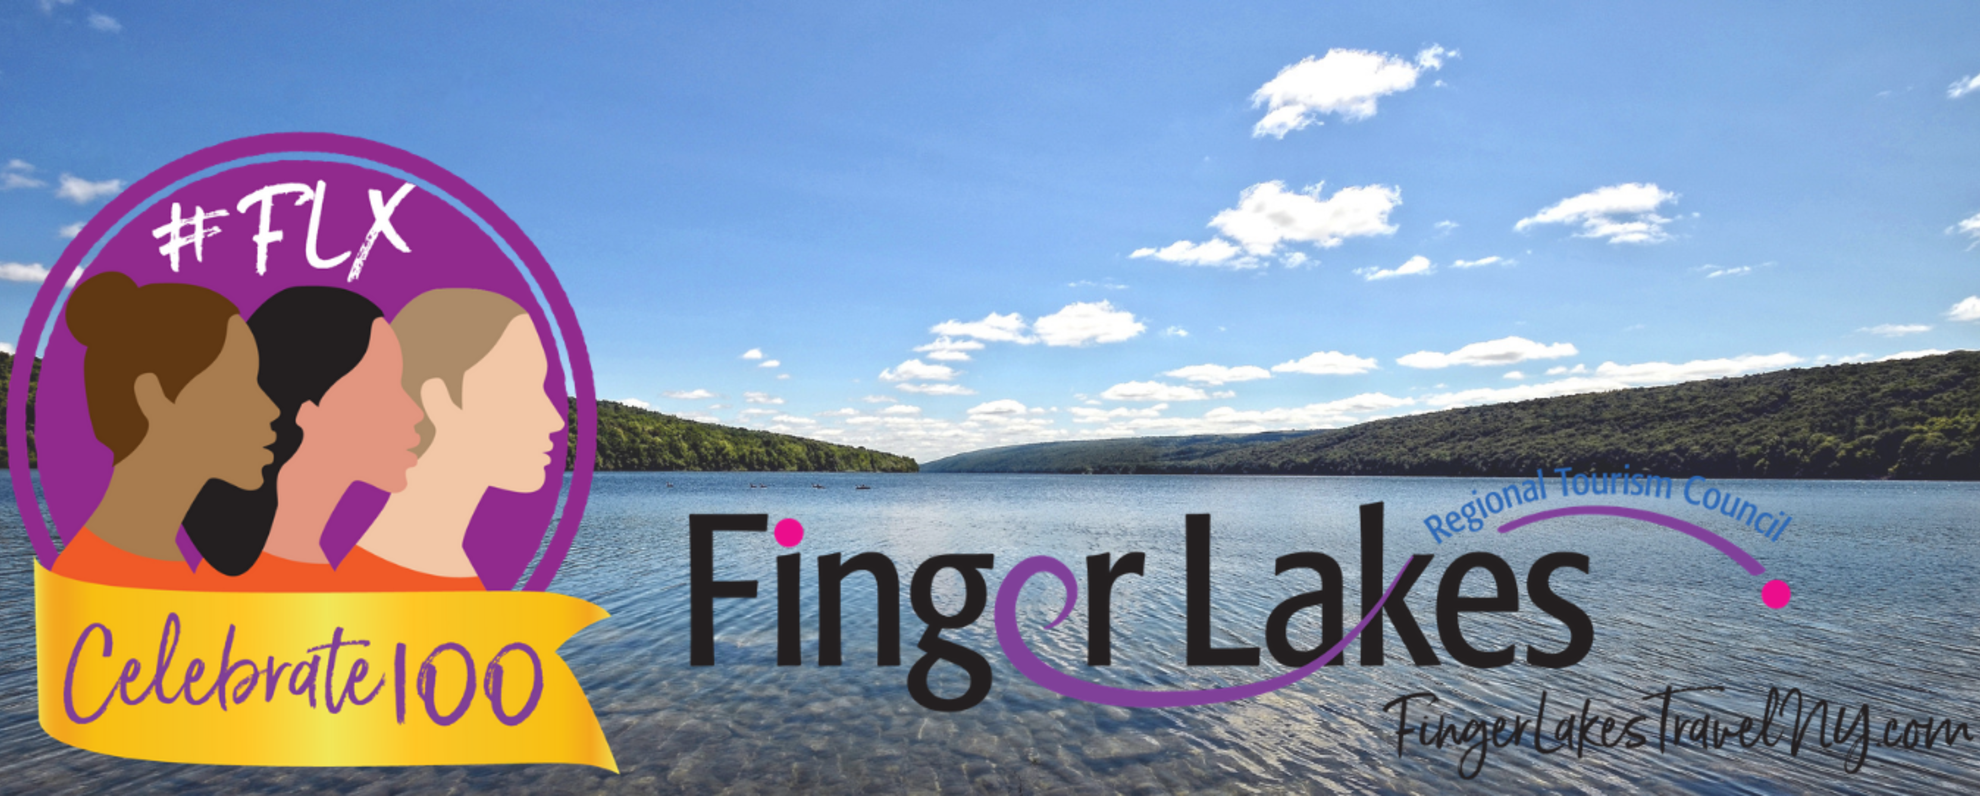  FLX Finger Lakes, New York for men, women, kids